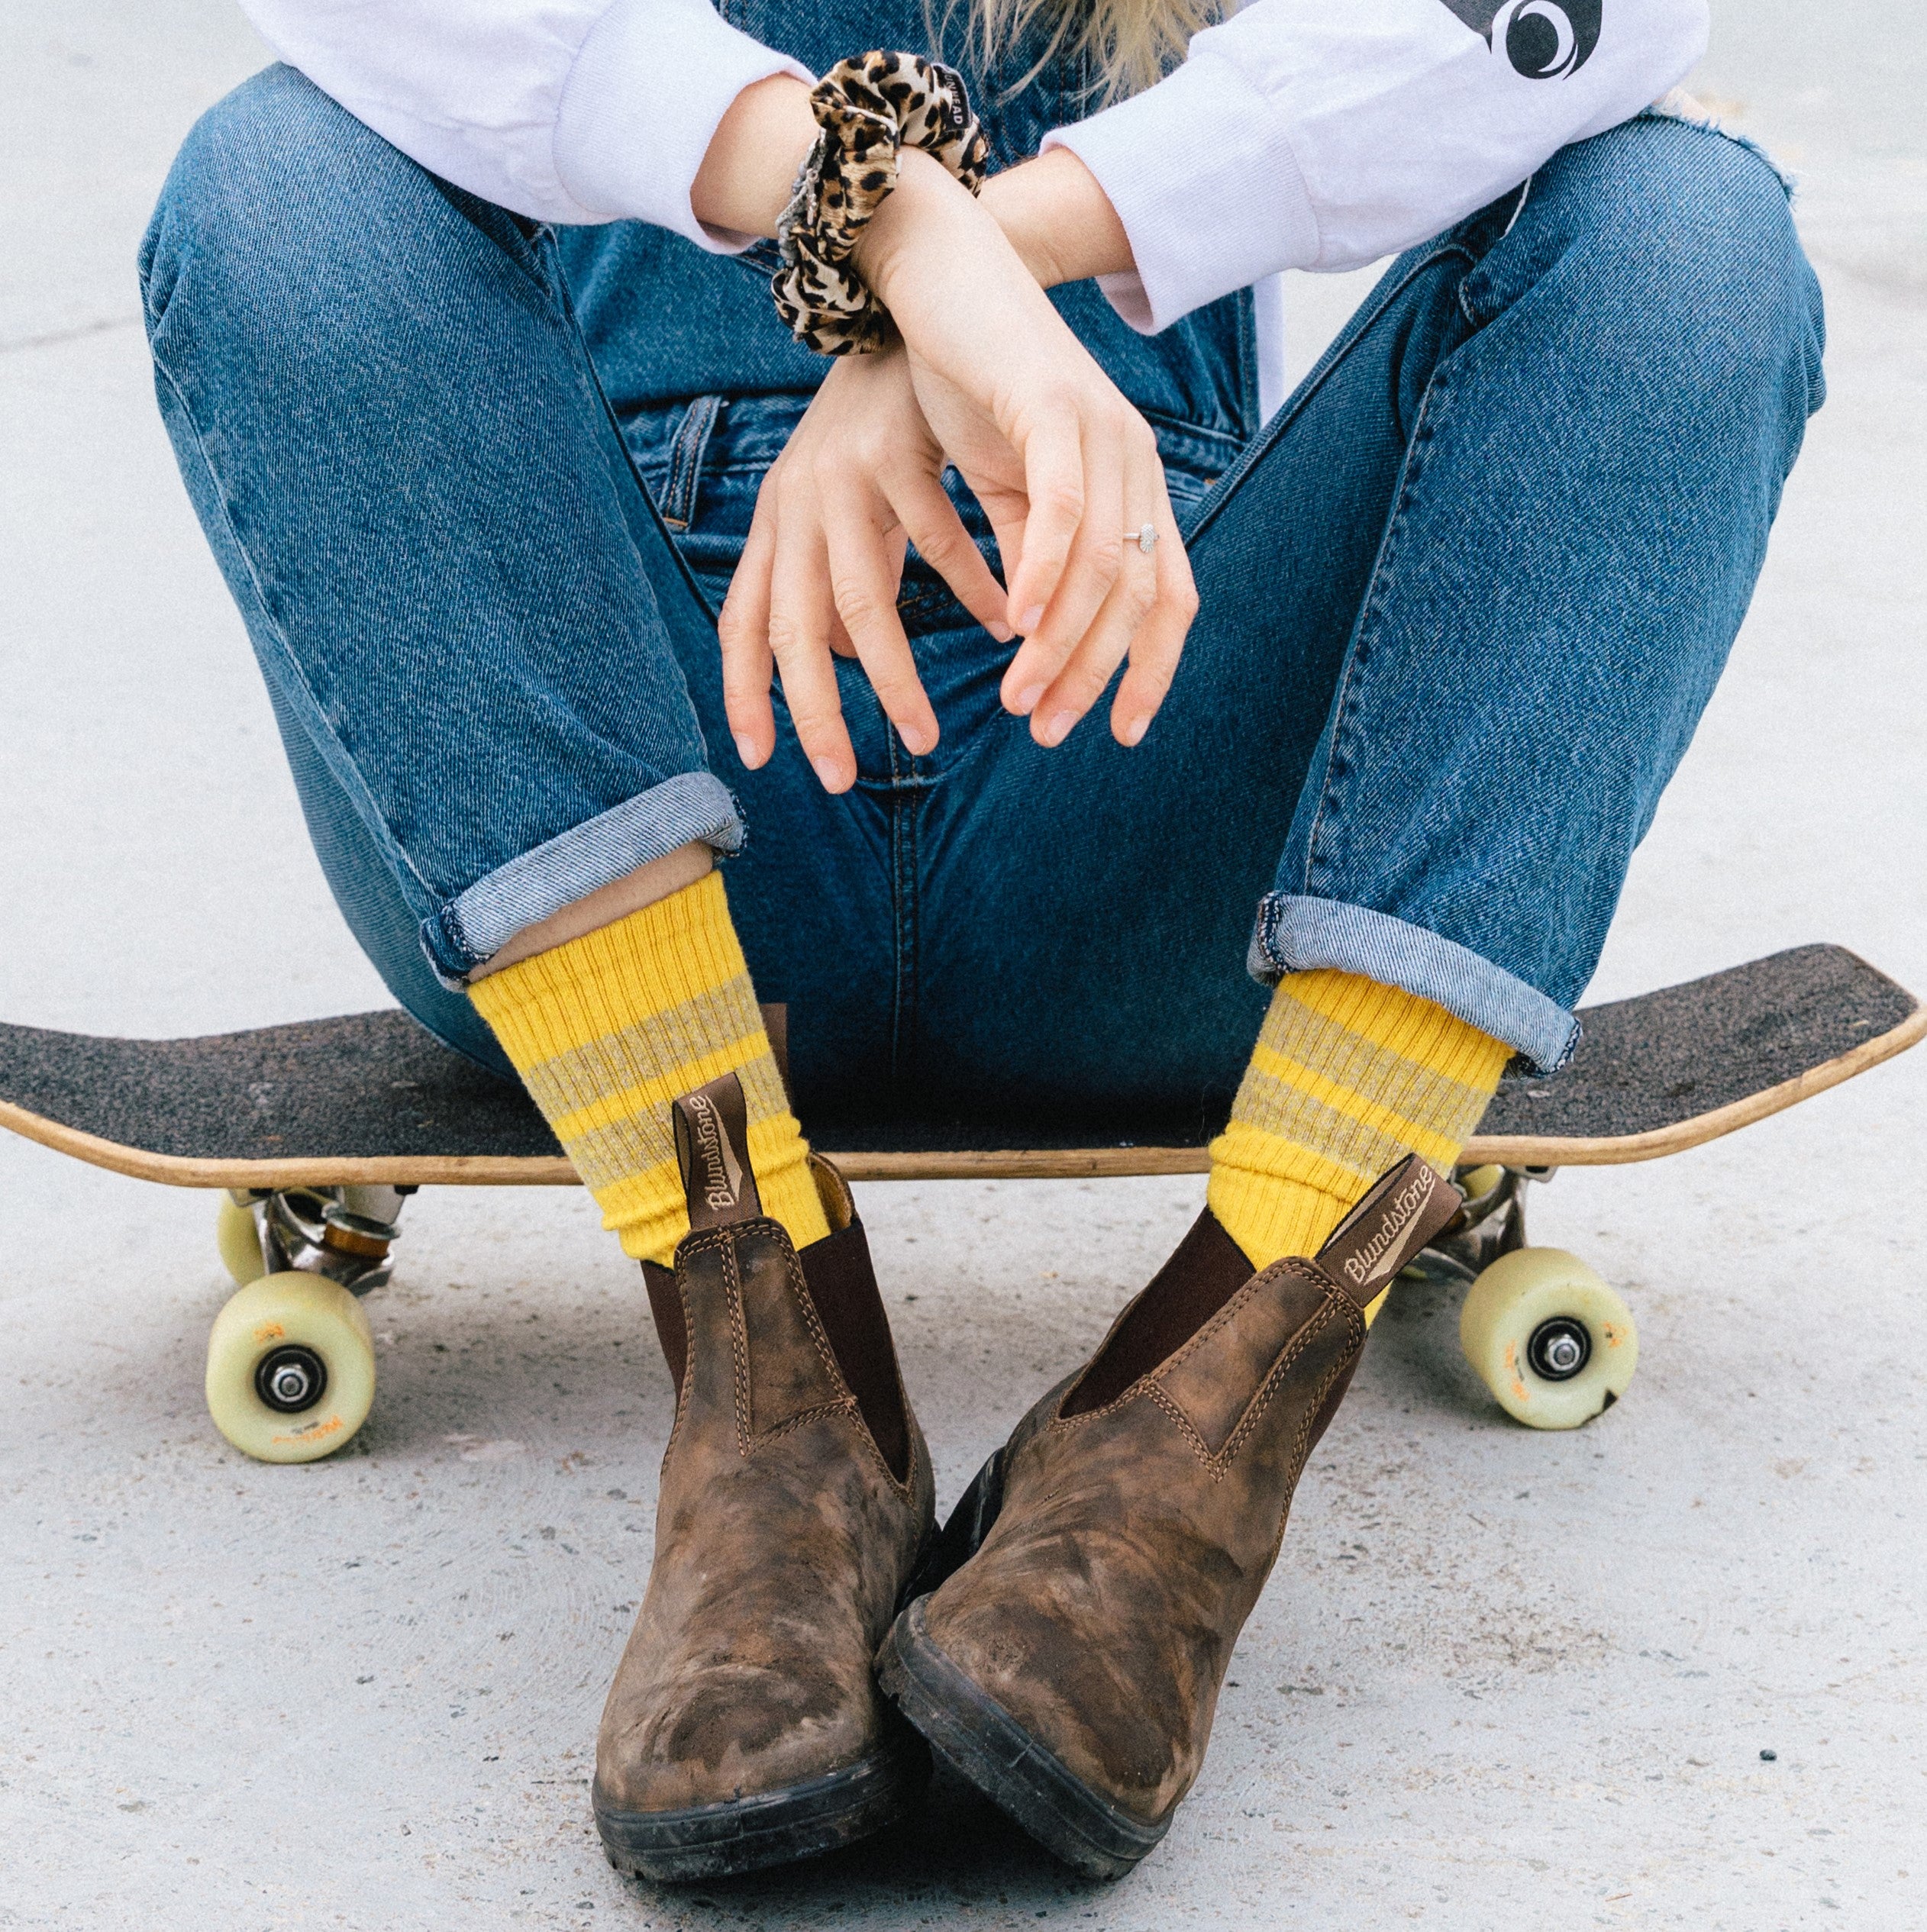 model sitting on skateboard wearing blundstone boots